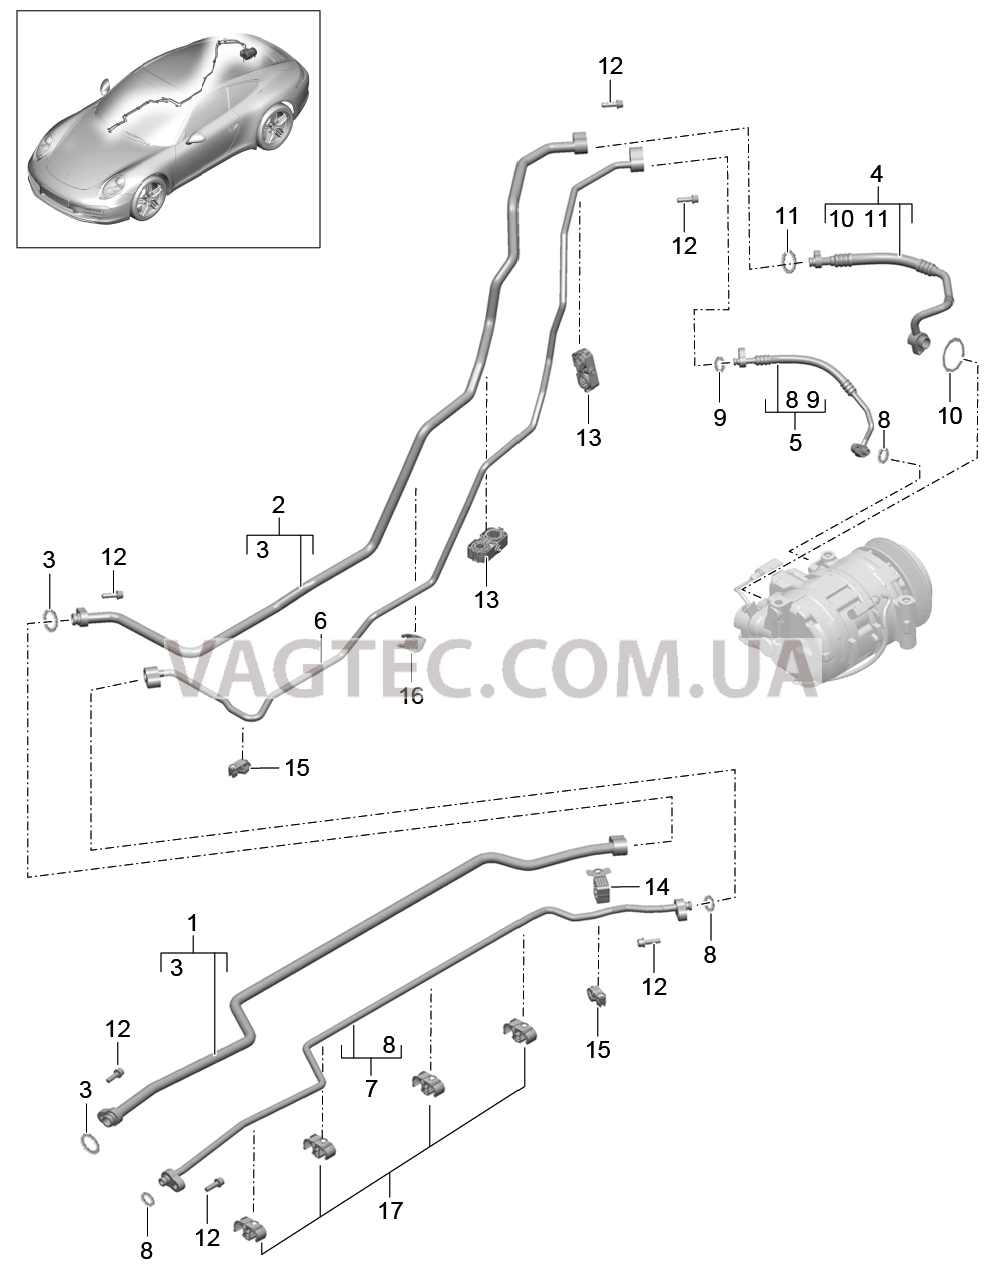 813-025 Циркуляция охлаждающей жидкости, Днище кузова, и, Задняя подвеска для PORSCHE 911.Carrera 2012-2016USA